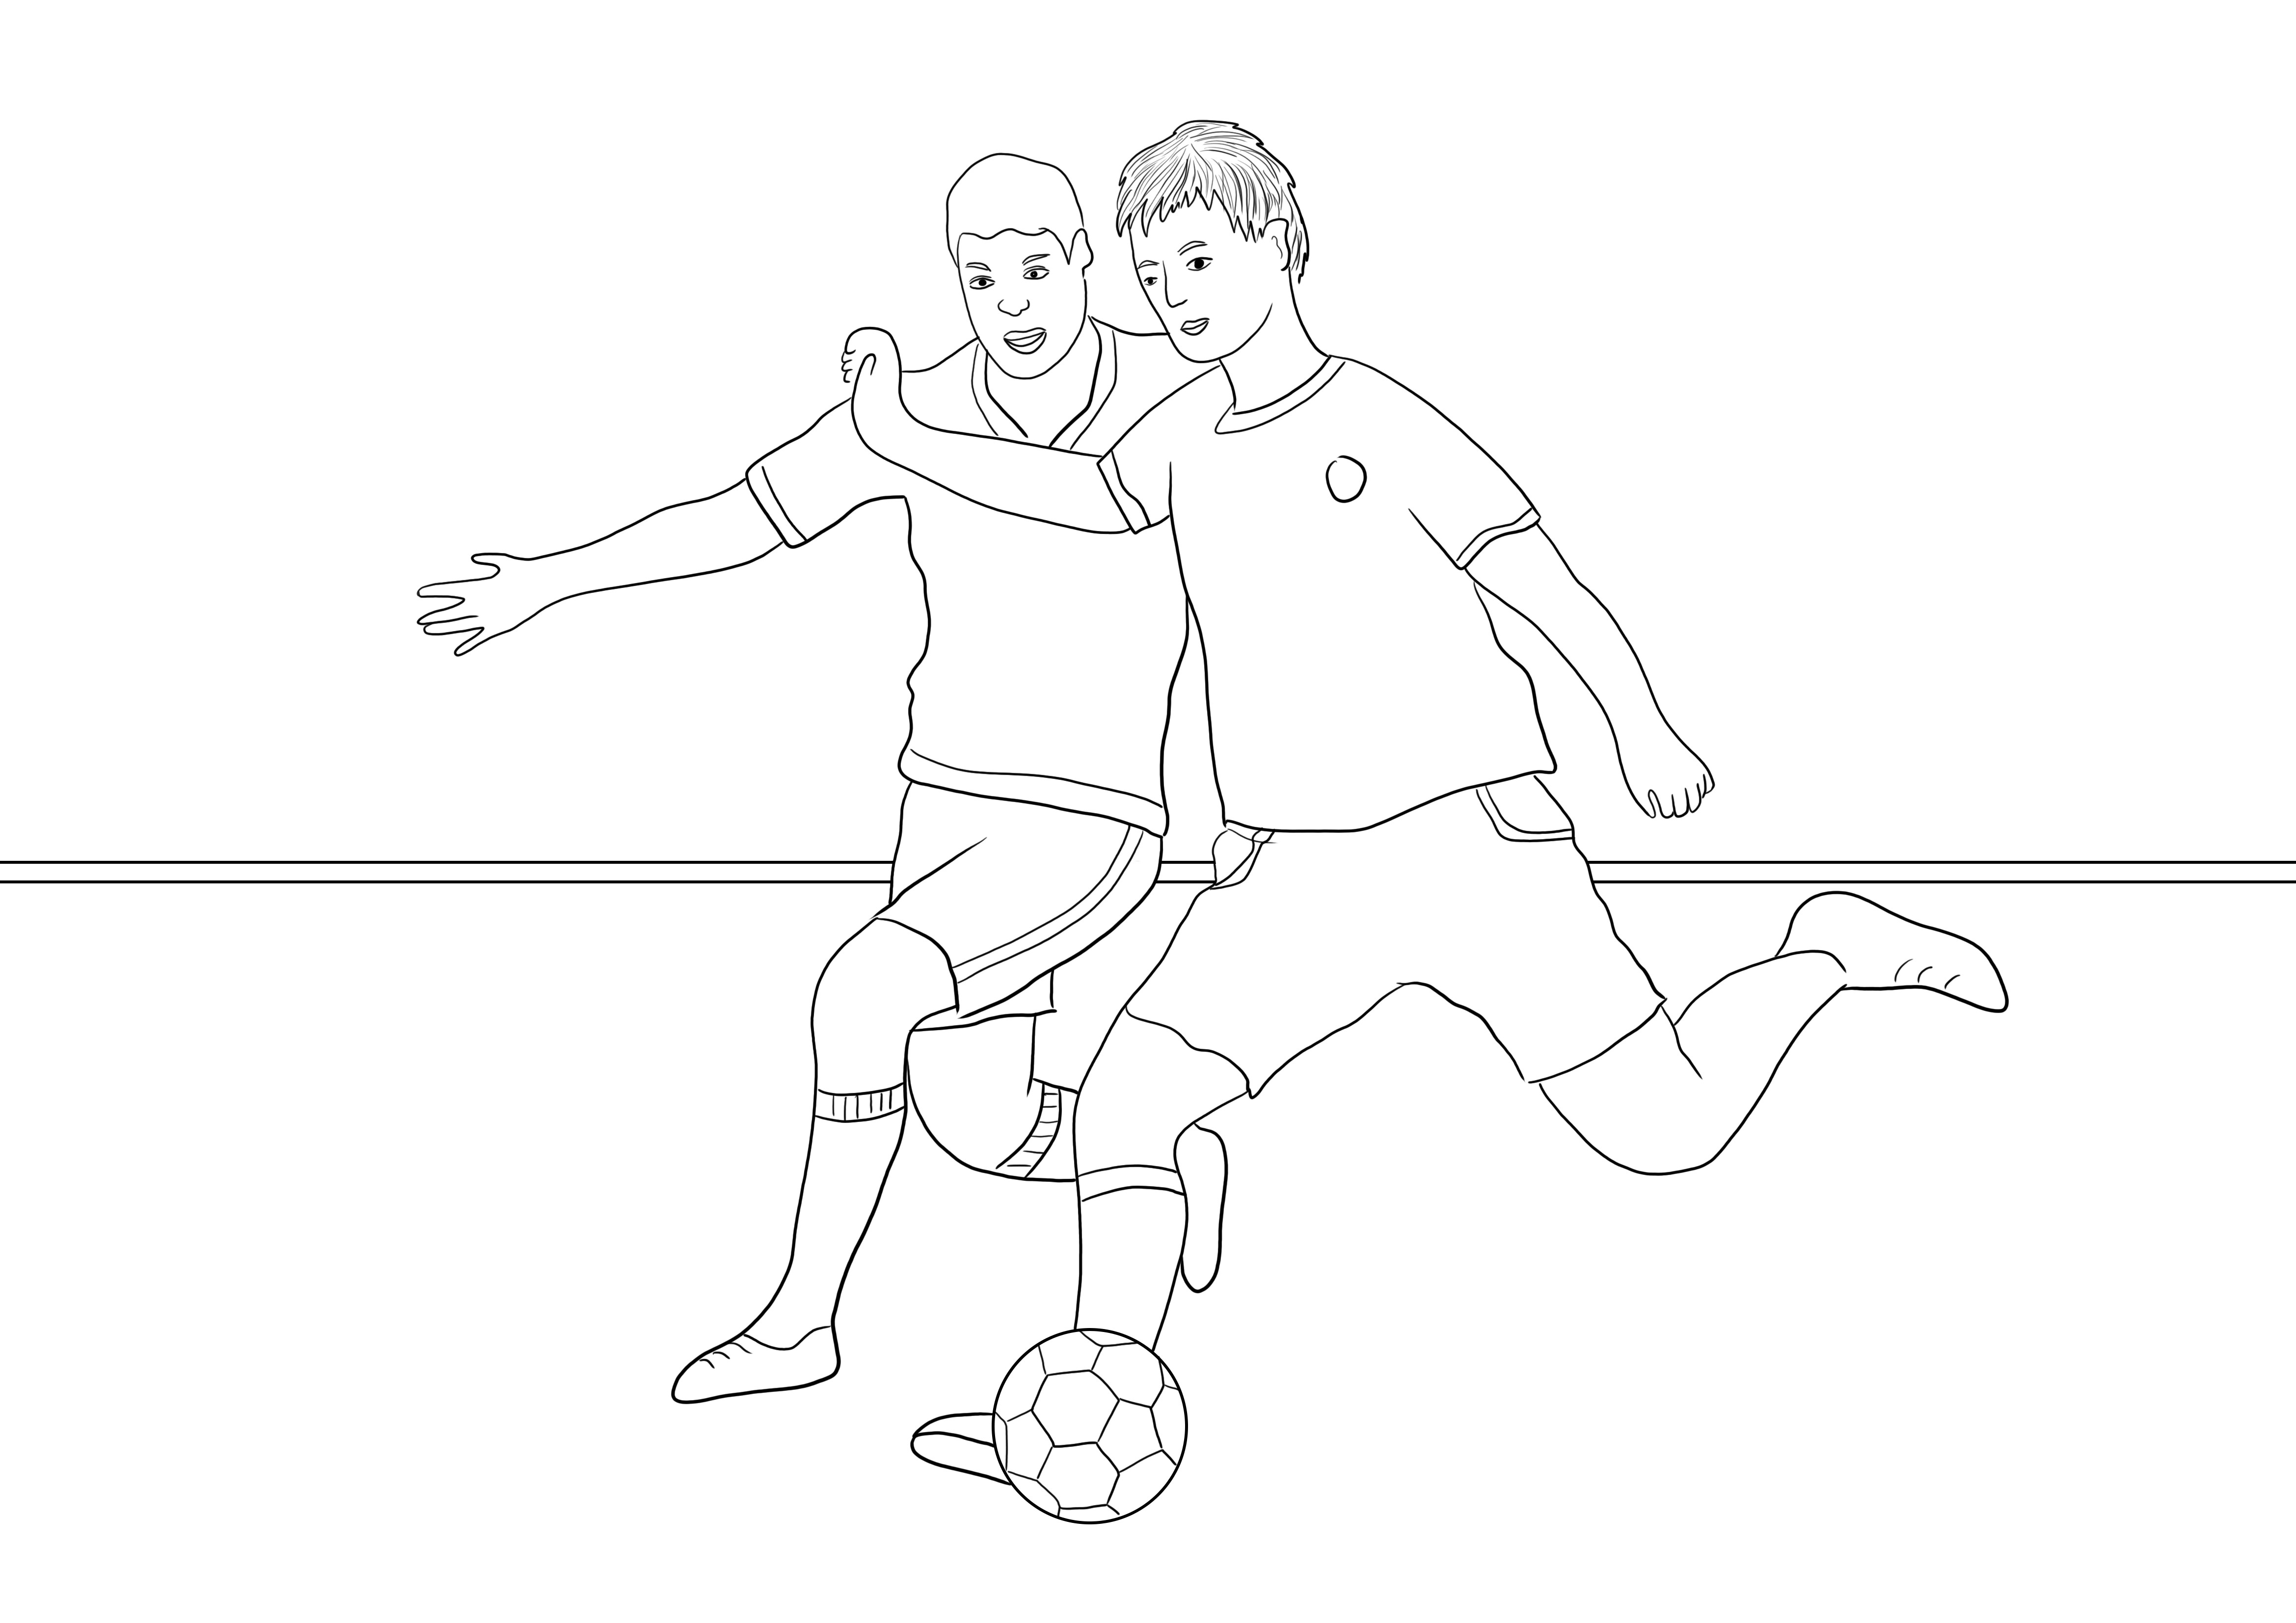 Download gratuito di due giocatori di calcio in esecuzione per una facile colorazione